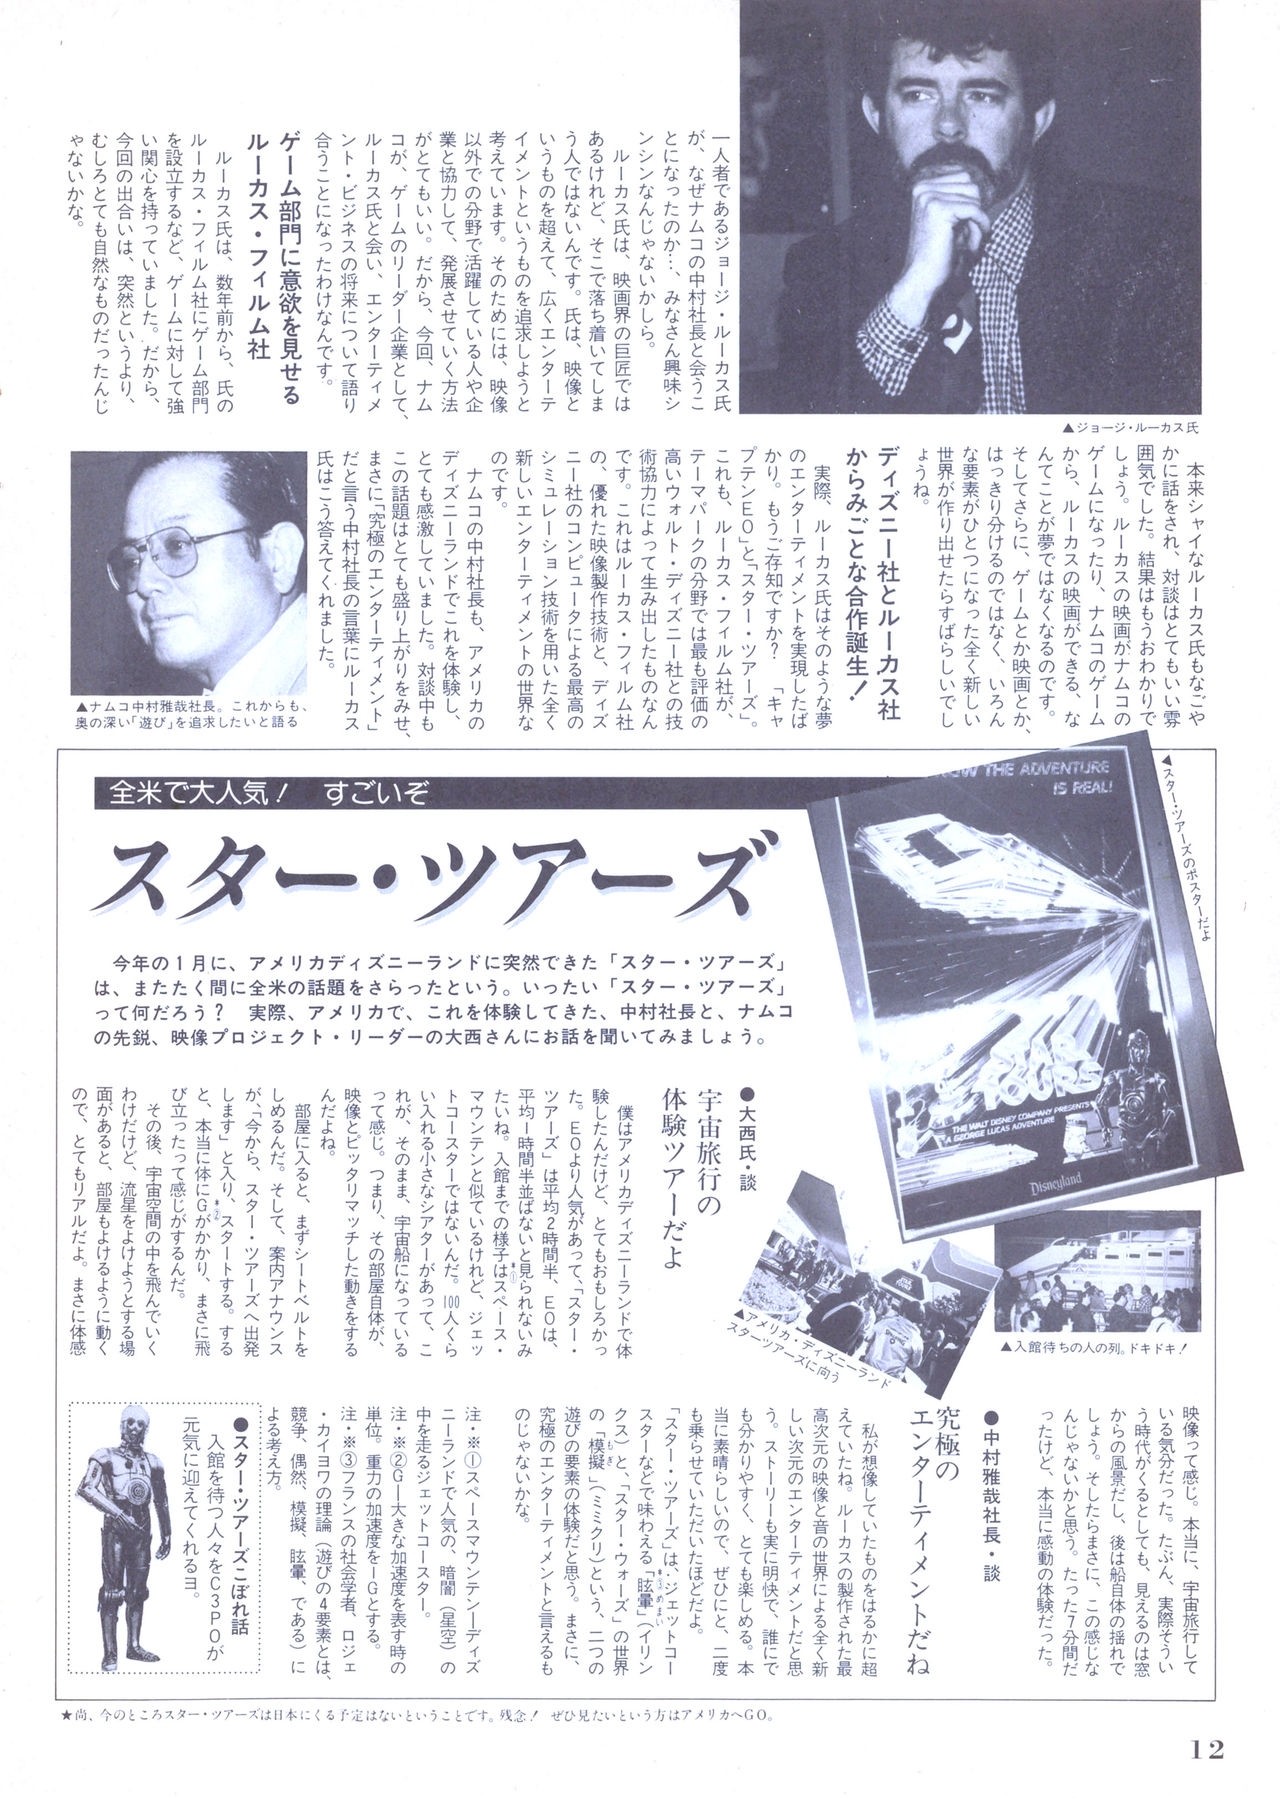 NG Namco Community Magazine 07 11